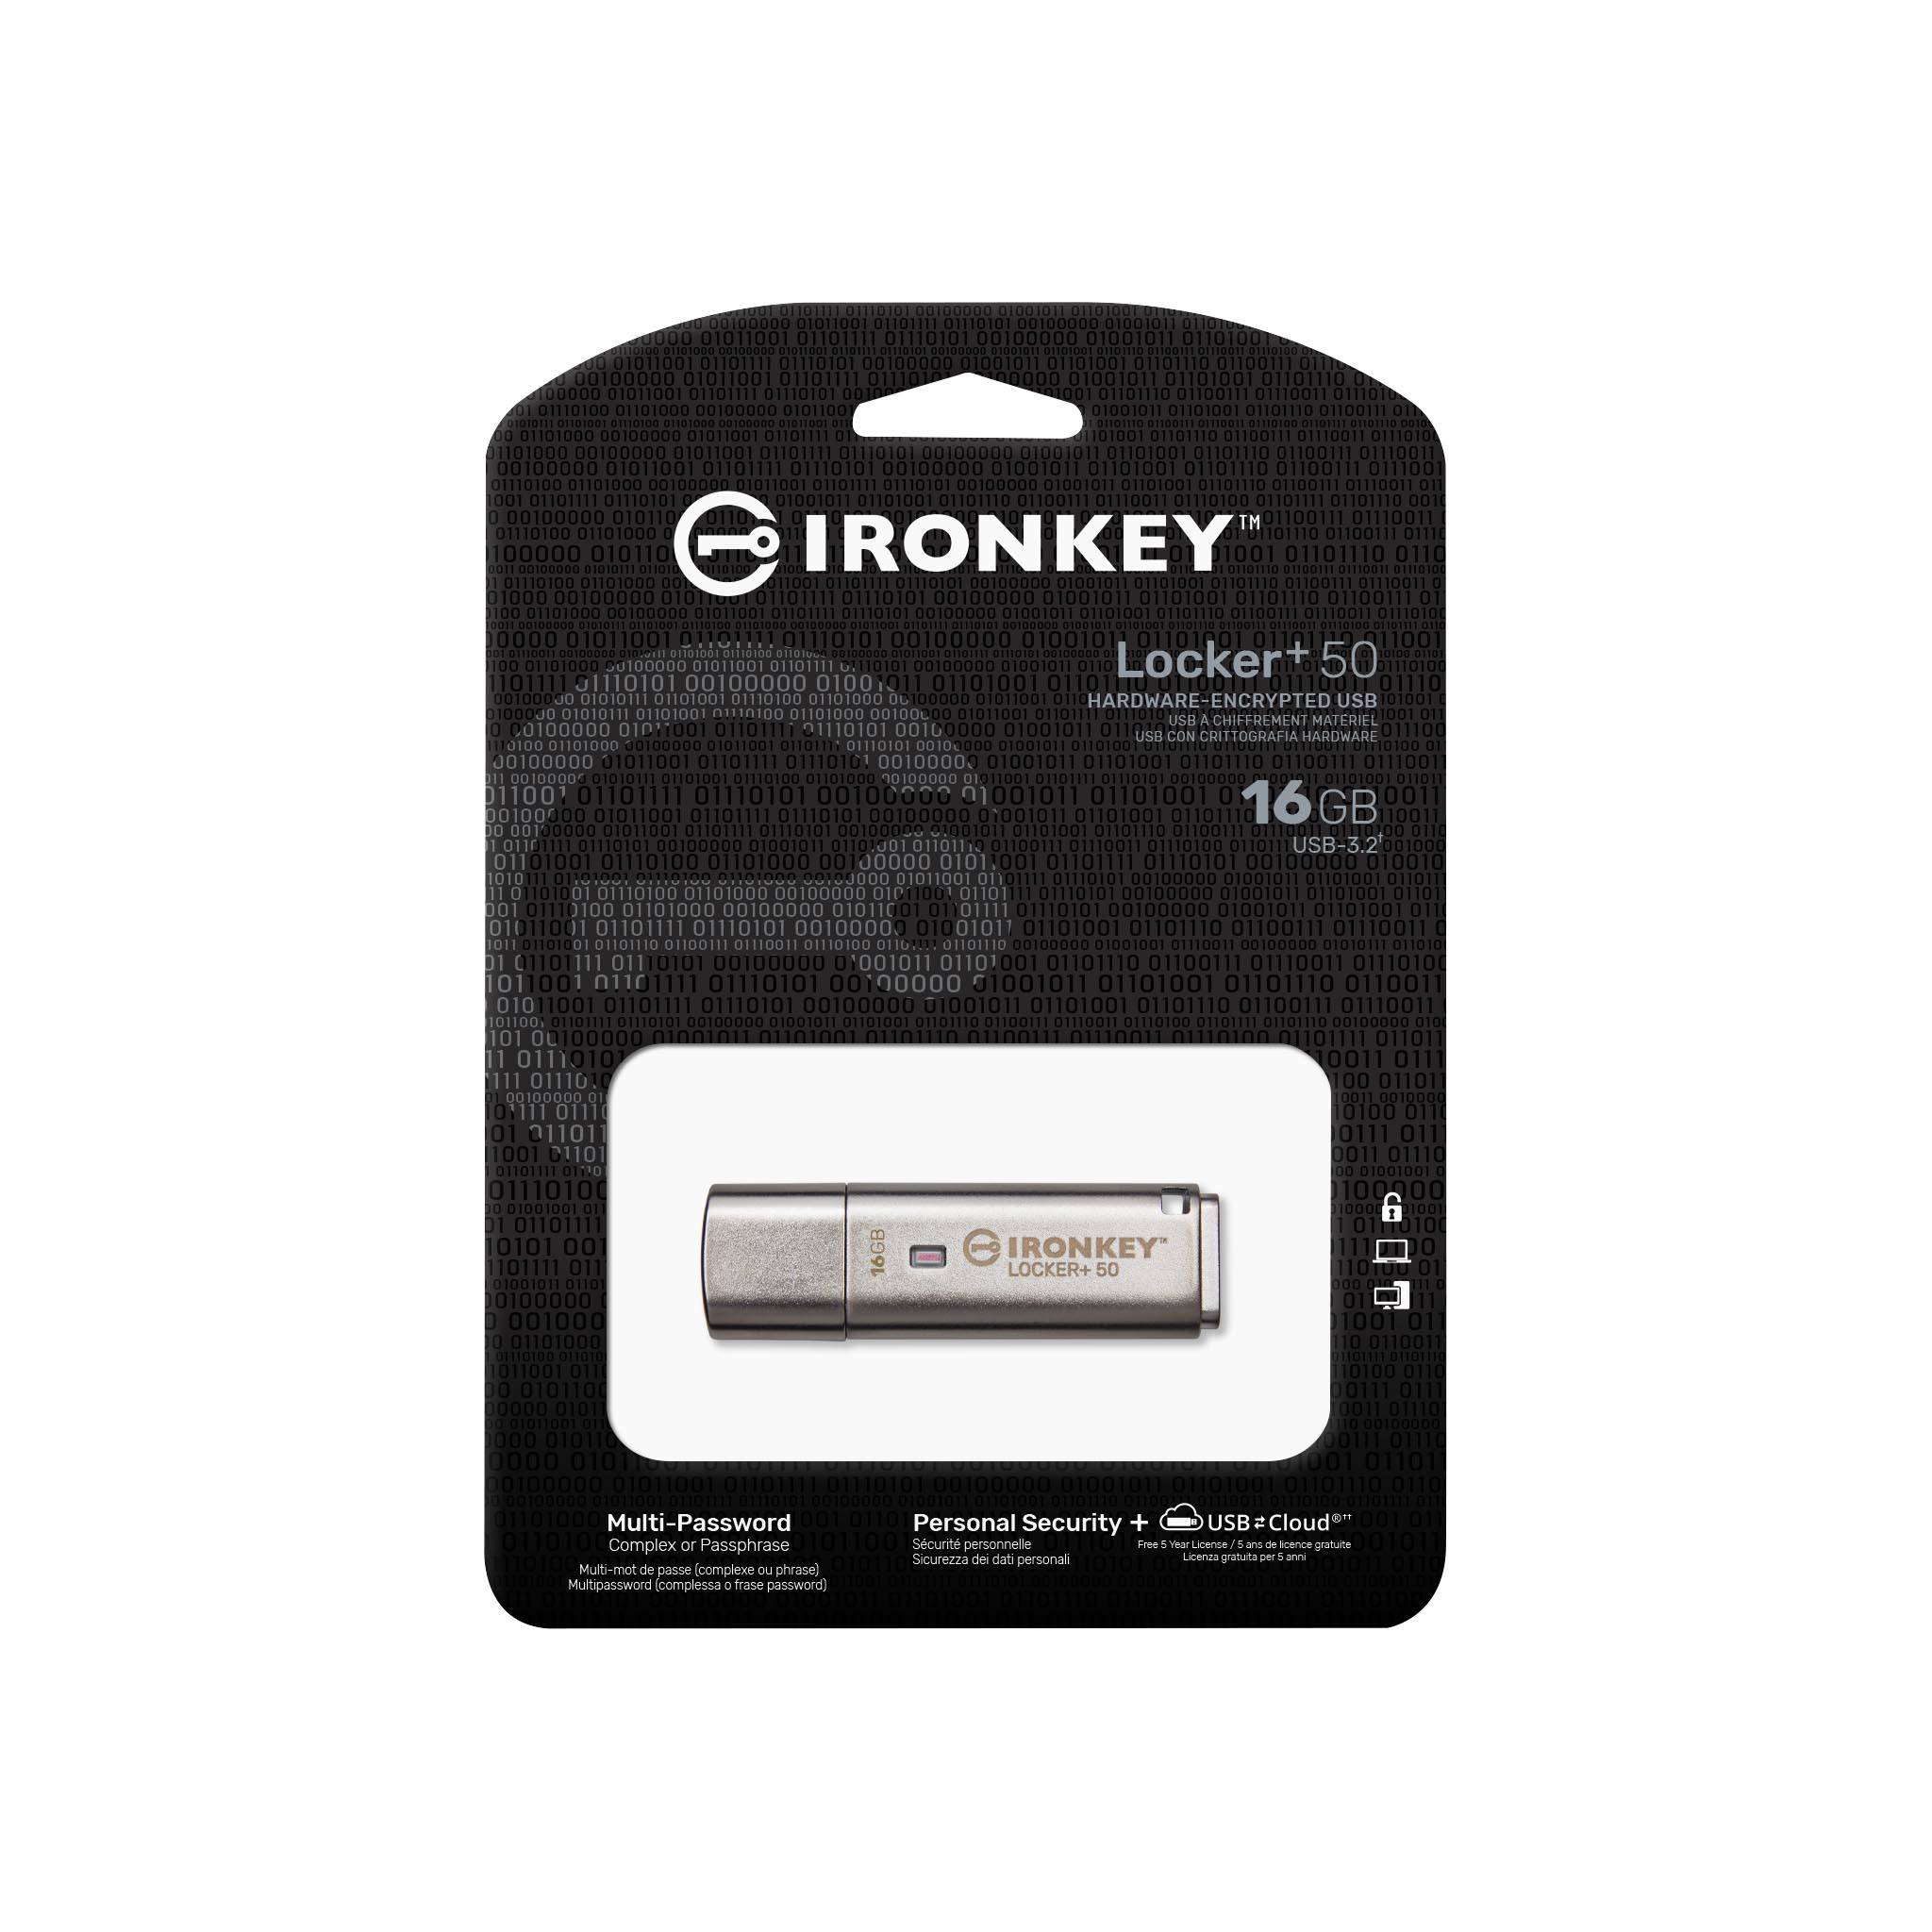 IronKey Locker+ 50 Clé USB chiffrée - Kingston Technology